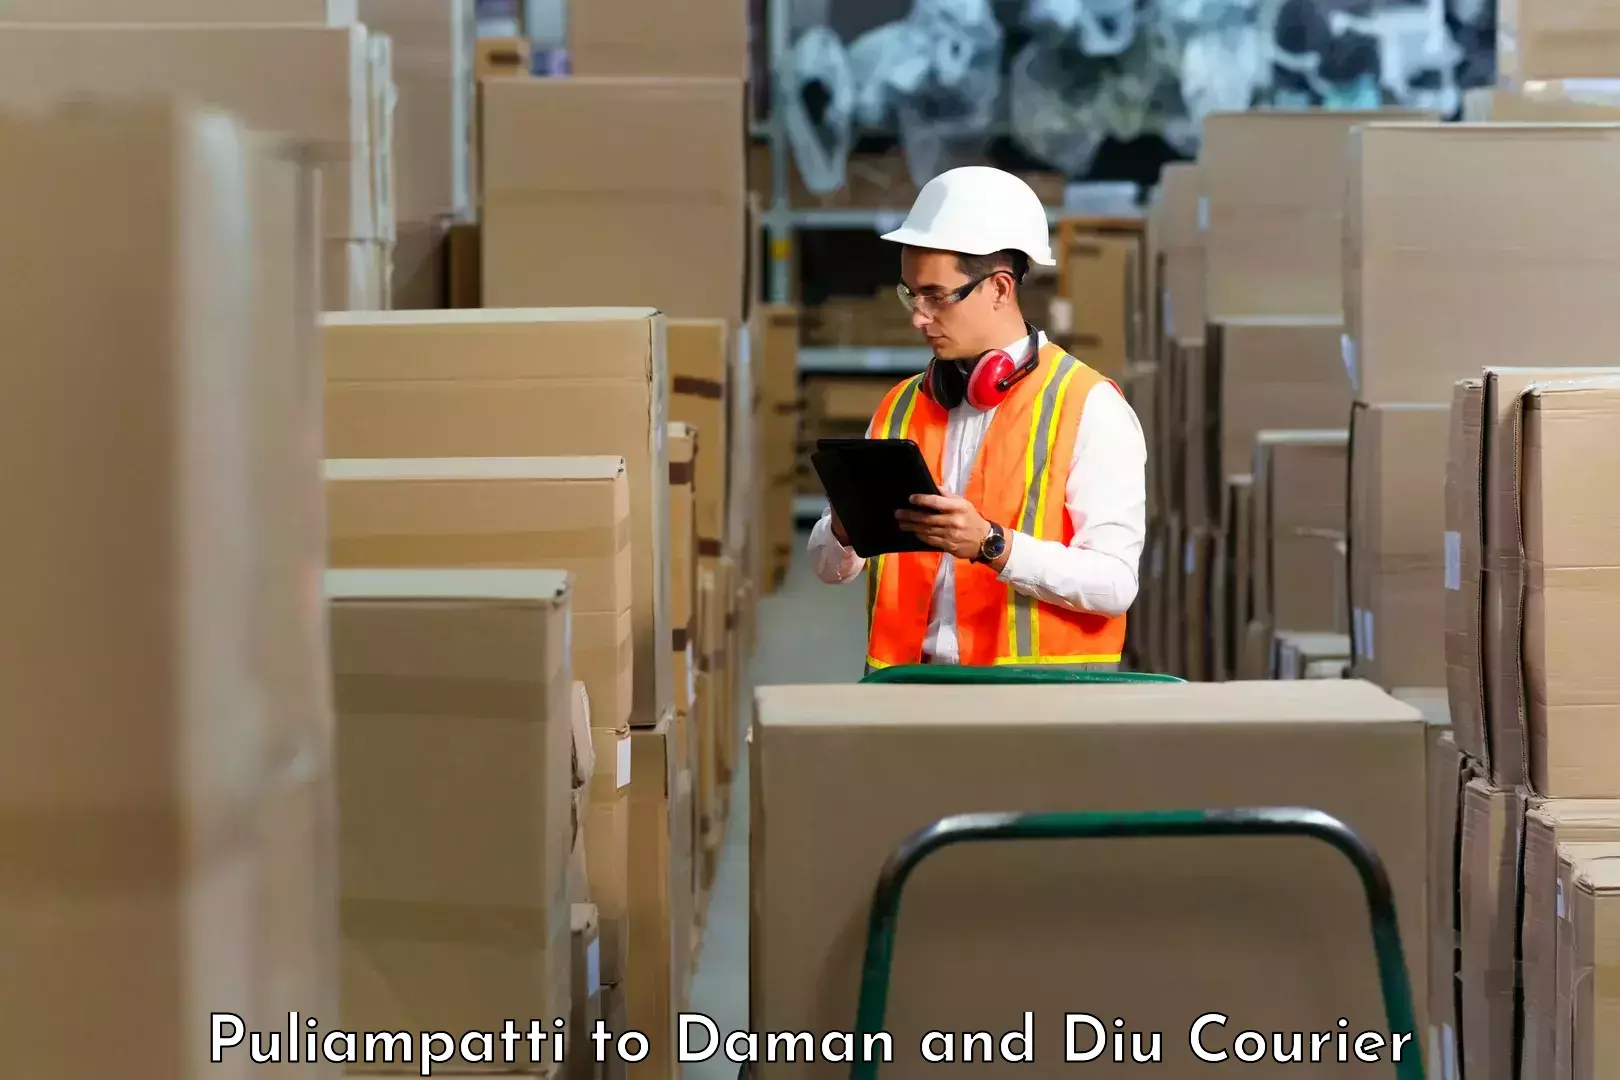 High-capacity parcel service Puliampatti to Diu